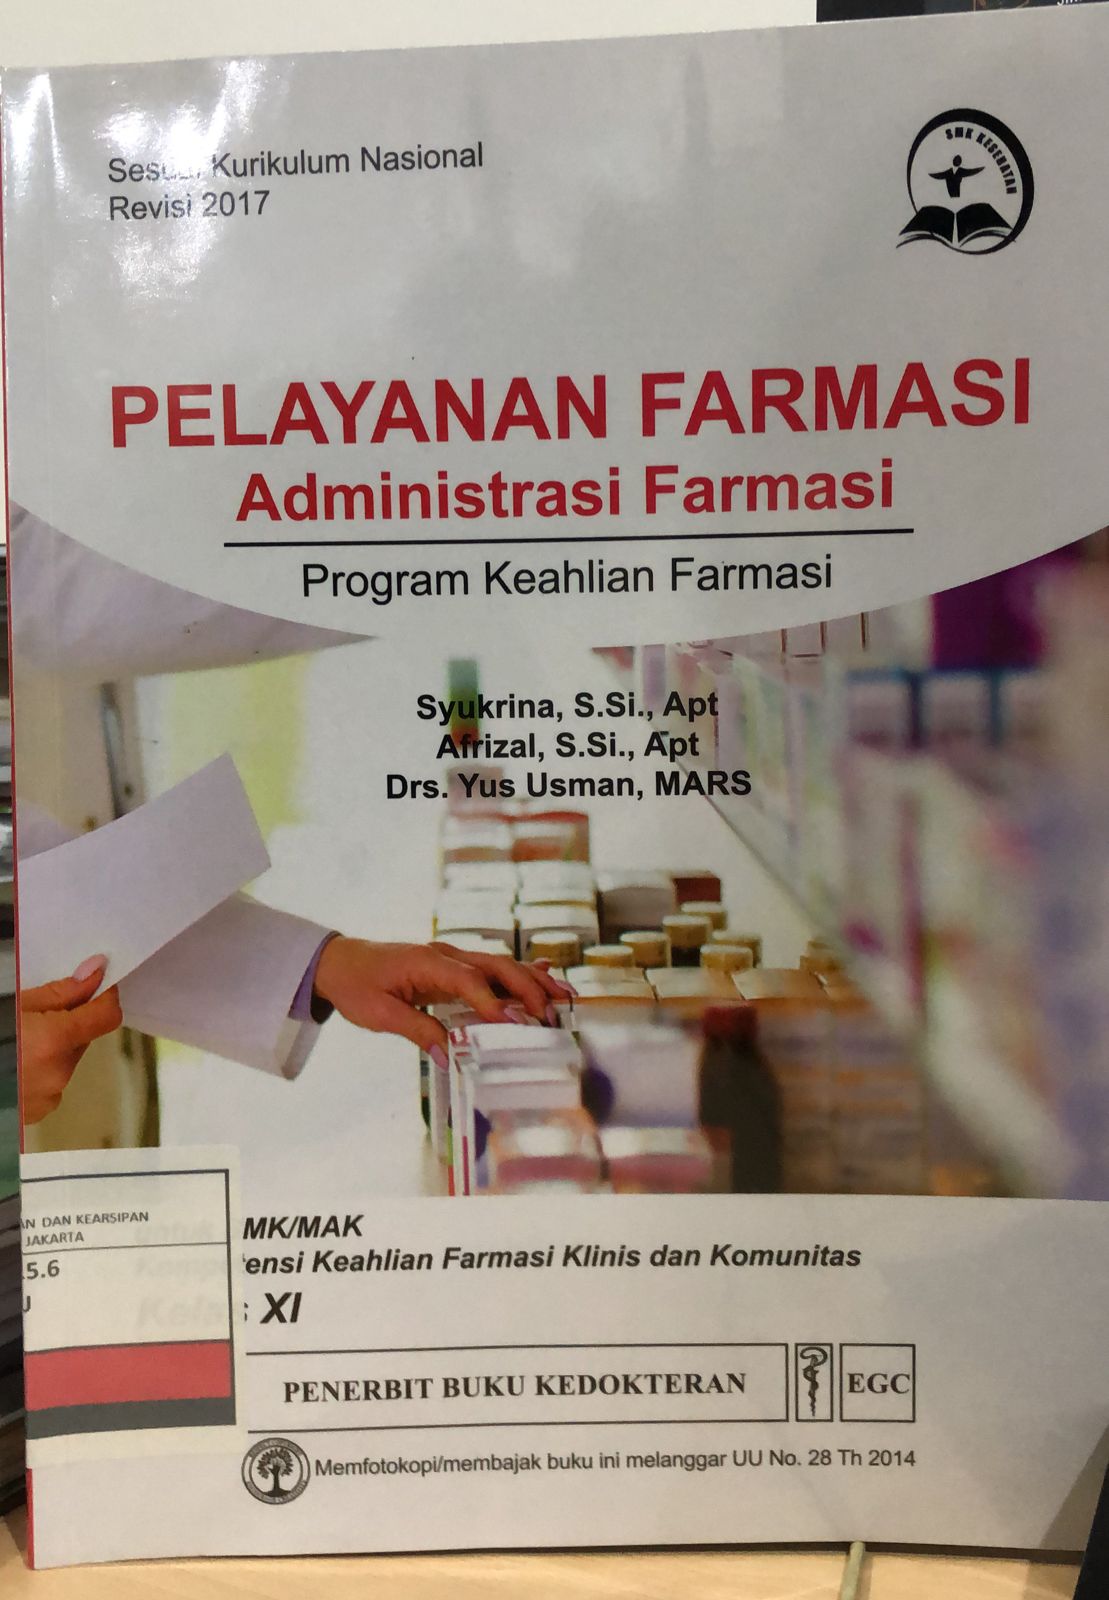 Pelayana Farmasi Administrasi Farmasi :  Program Keahlian Farmasi untuk MK/MAK Kompetensi Keahlian Farmasi Klinis dan Komunitas Kelas XI